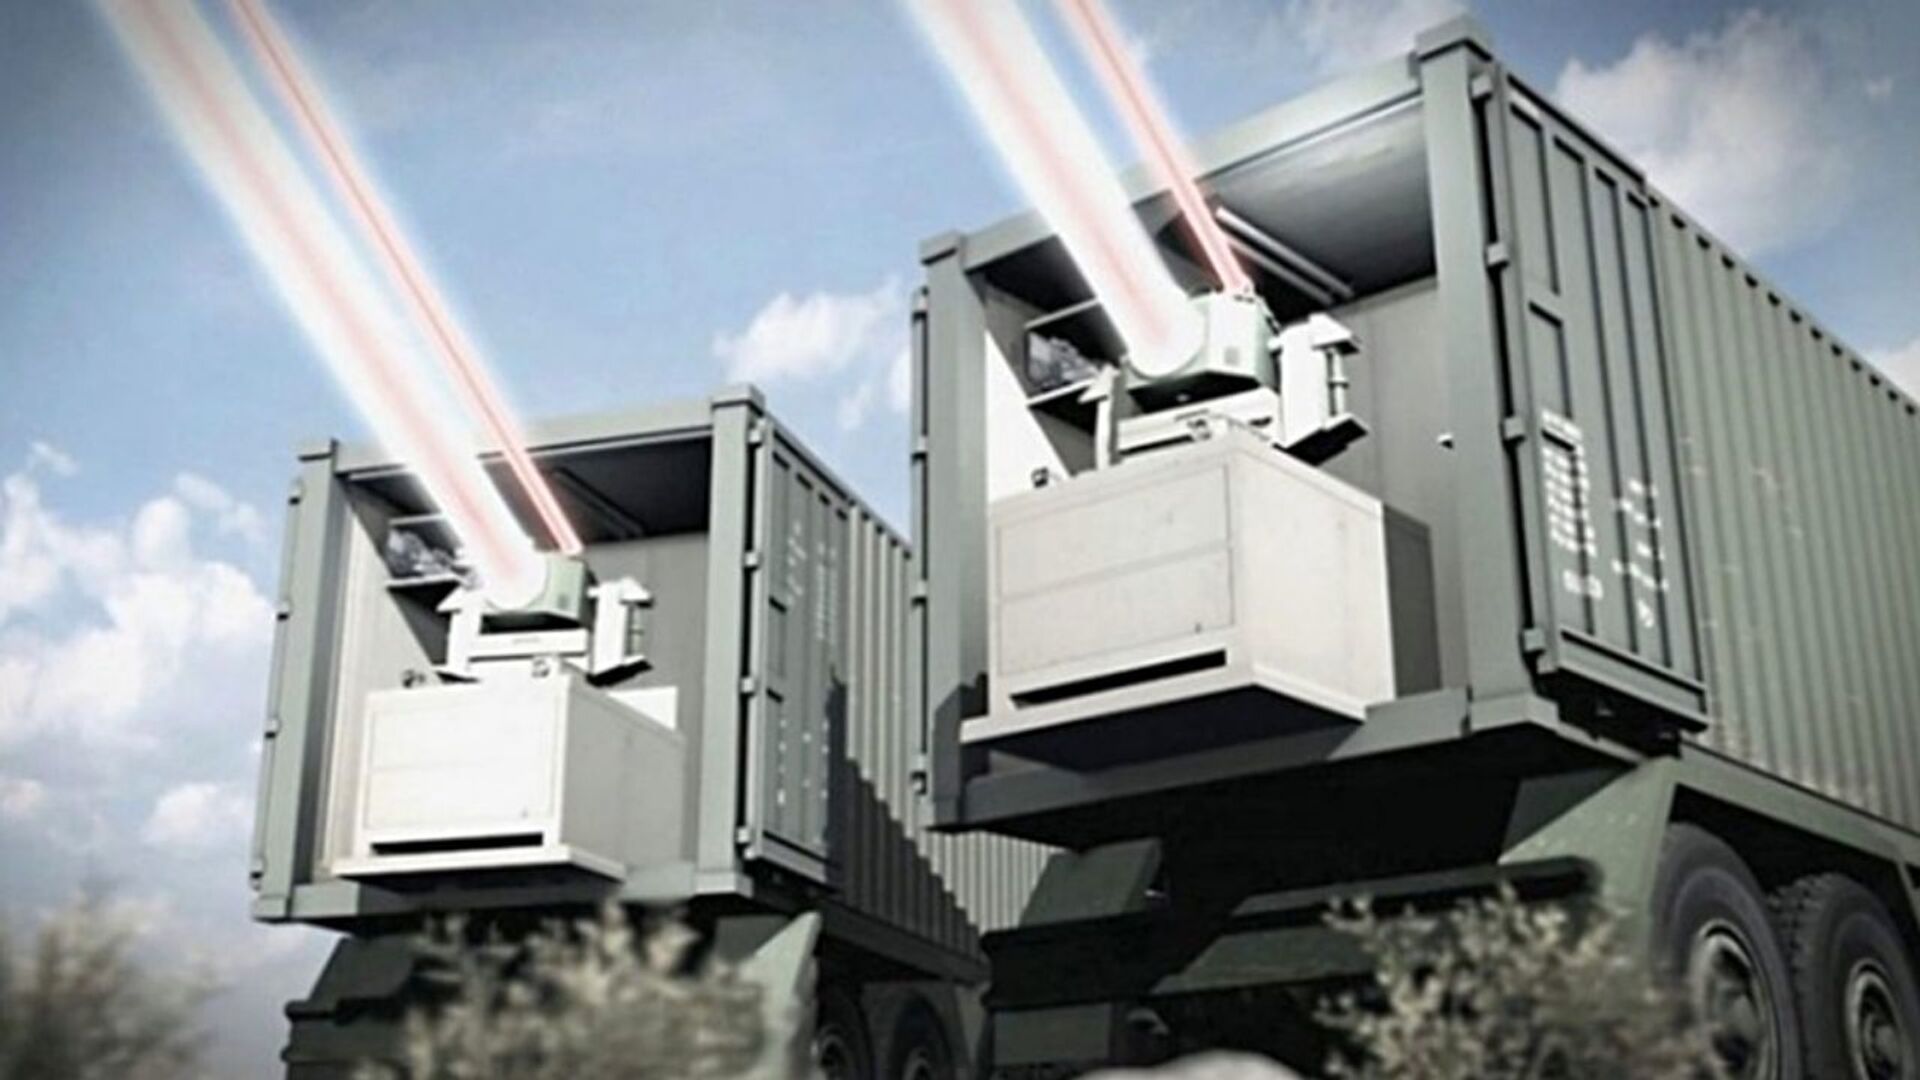 Empresas de defesa de Israel e EUA desenvolverão sistemas de armas a laser para forças israelenses - Sputnik Brasil, 1920, 29.07.2021